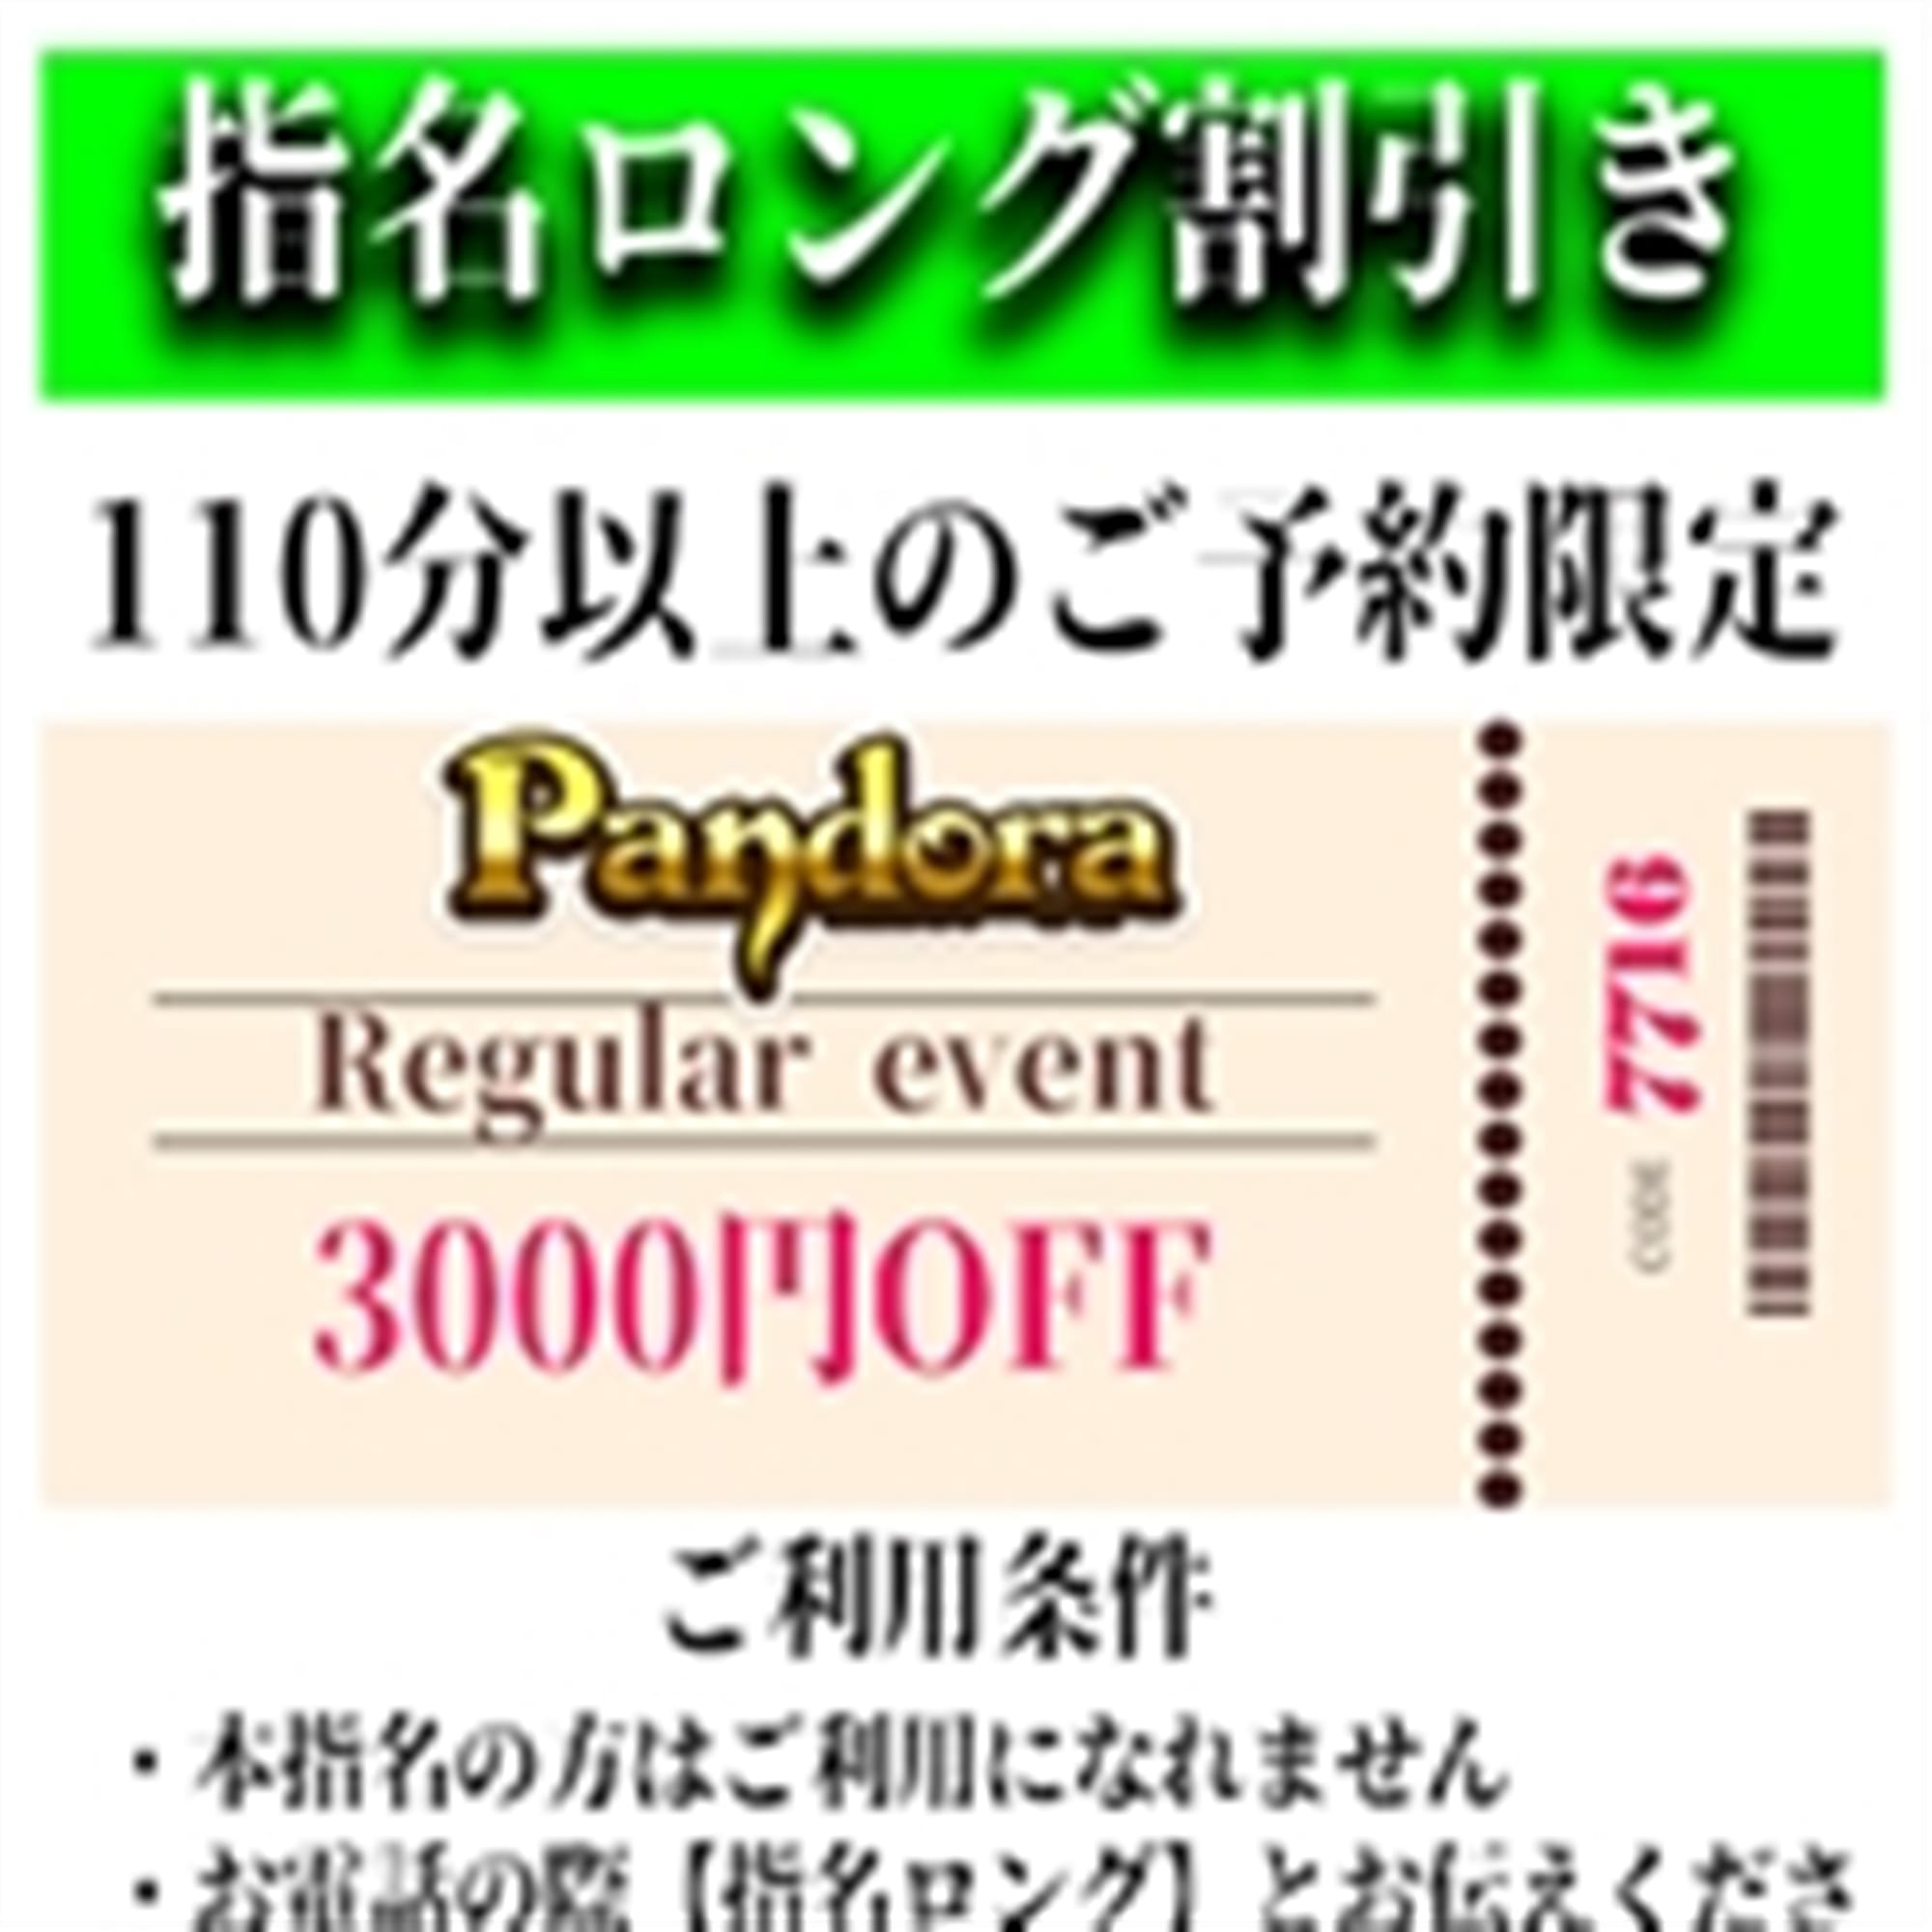 「ご指名のお客様も遊べるロングコース割引」04/27(土) 03:10 | Pandora(パンドラ)新潟のお得なニュース